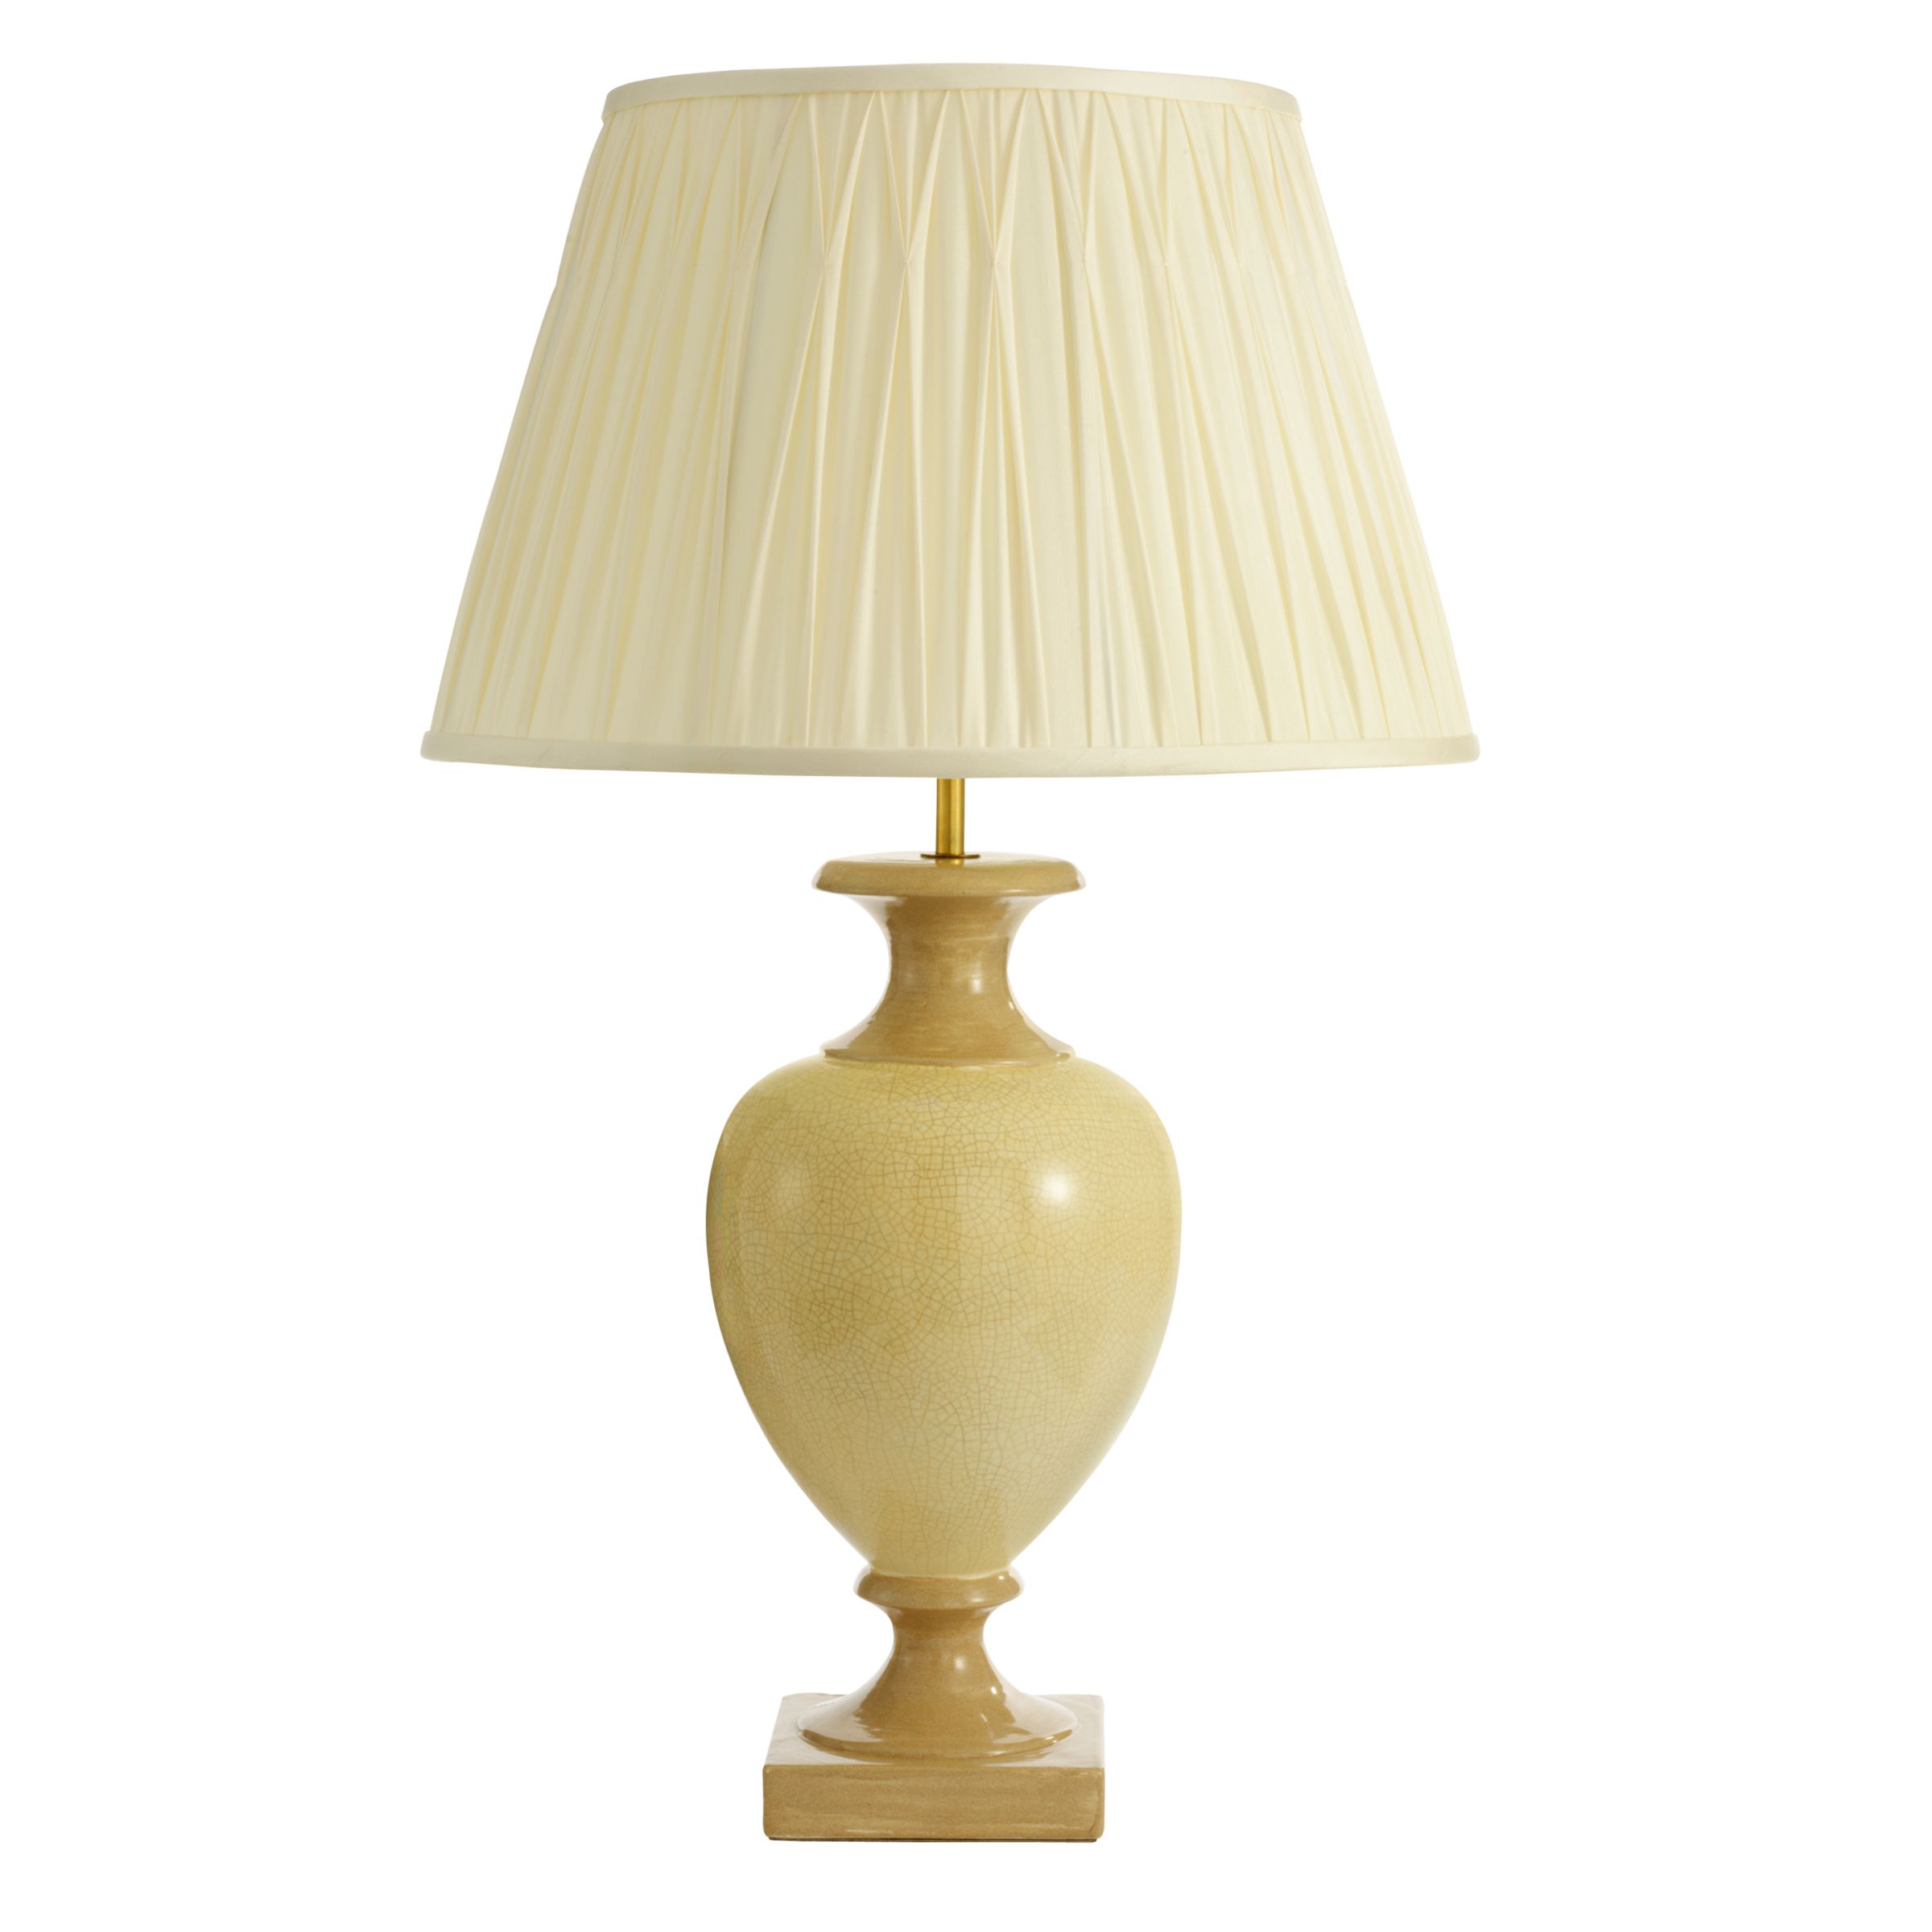 John Lewis Florence Table Lamp